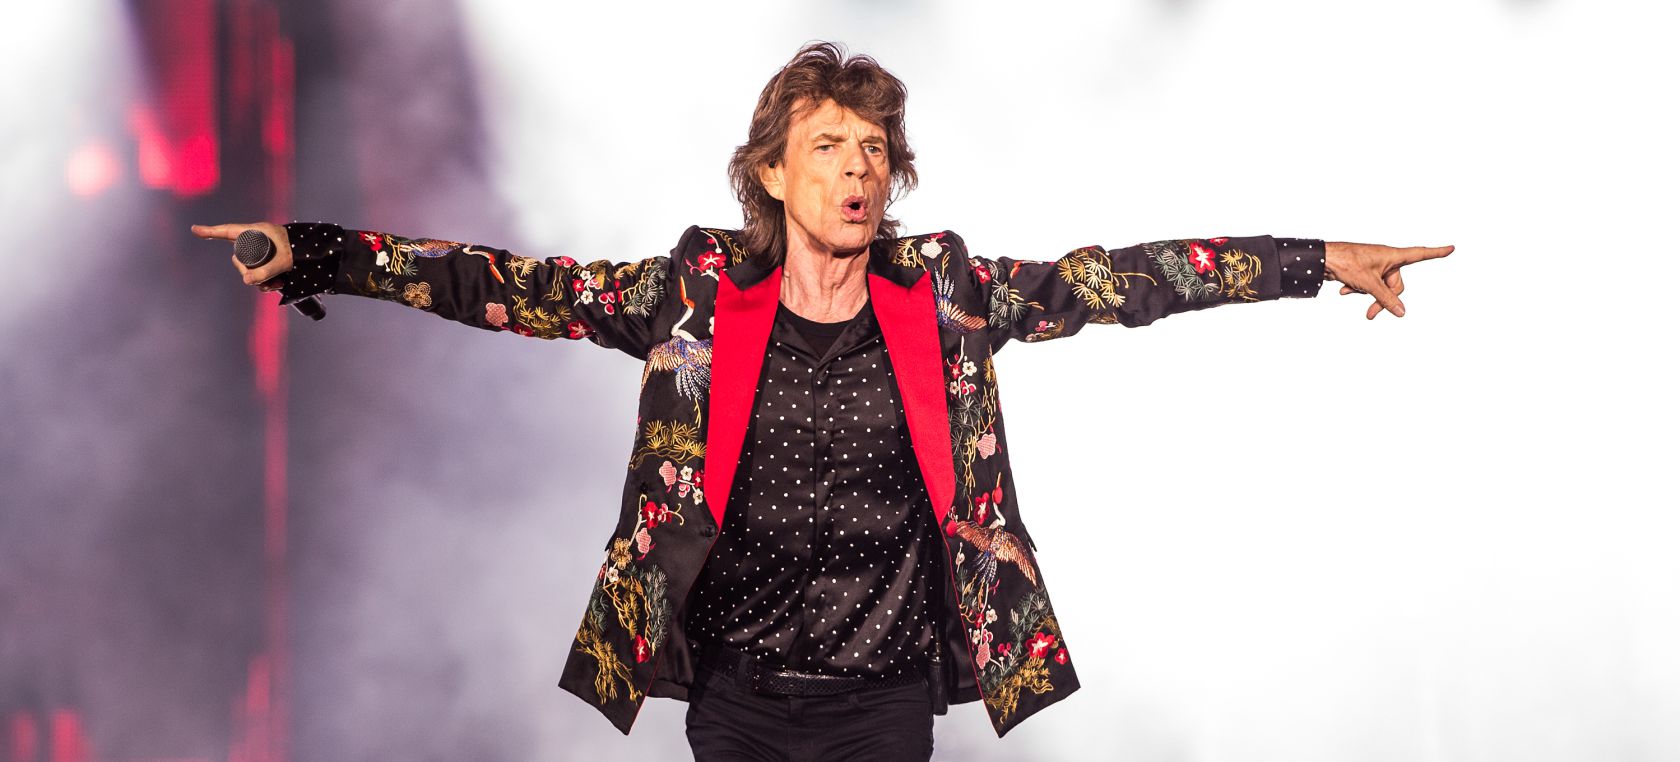 Mick Jagger recuerda a Charlie Watts en Apple Music: “Será muy difícil sin él aquí”